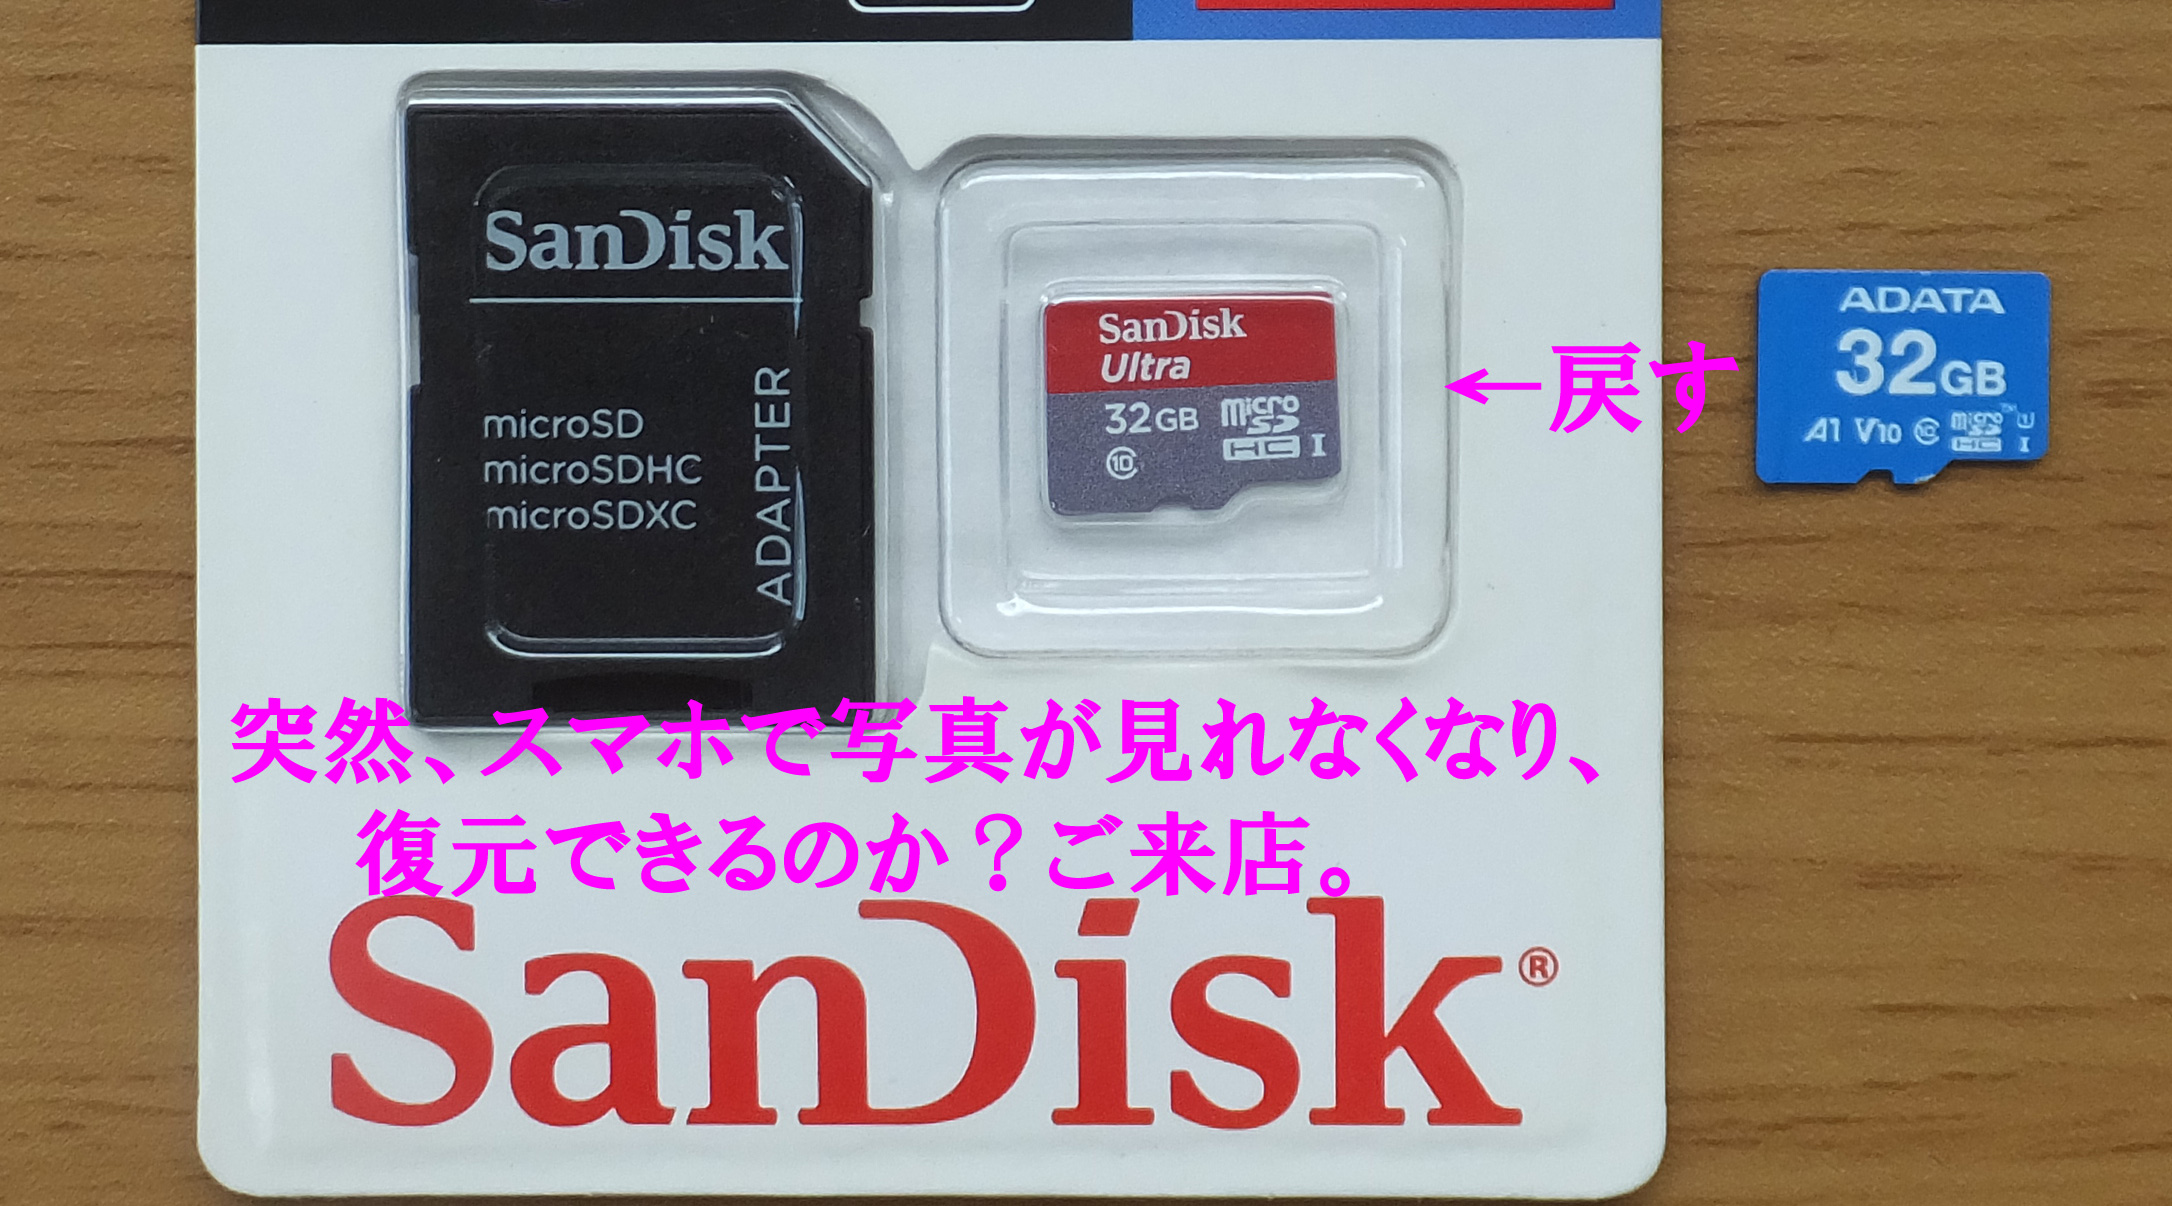 突然、microSD写真がスマホで見れなくなり困っています。